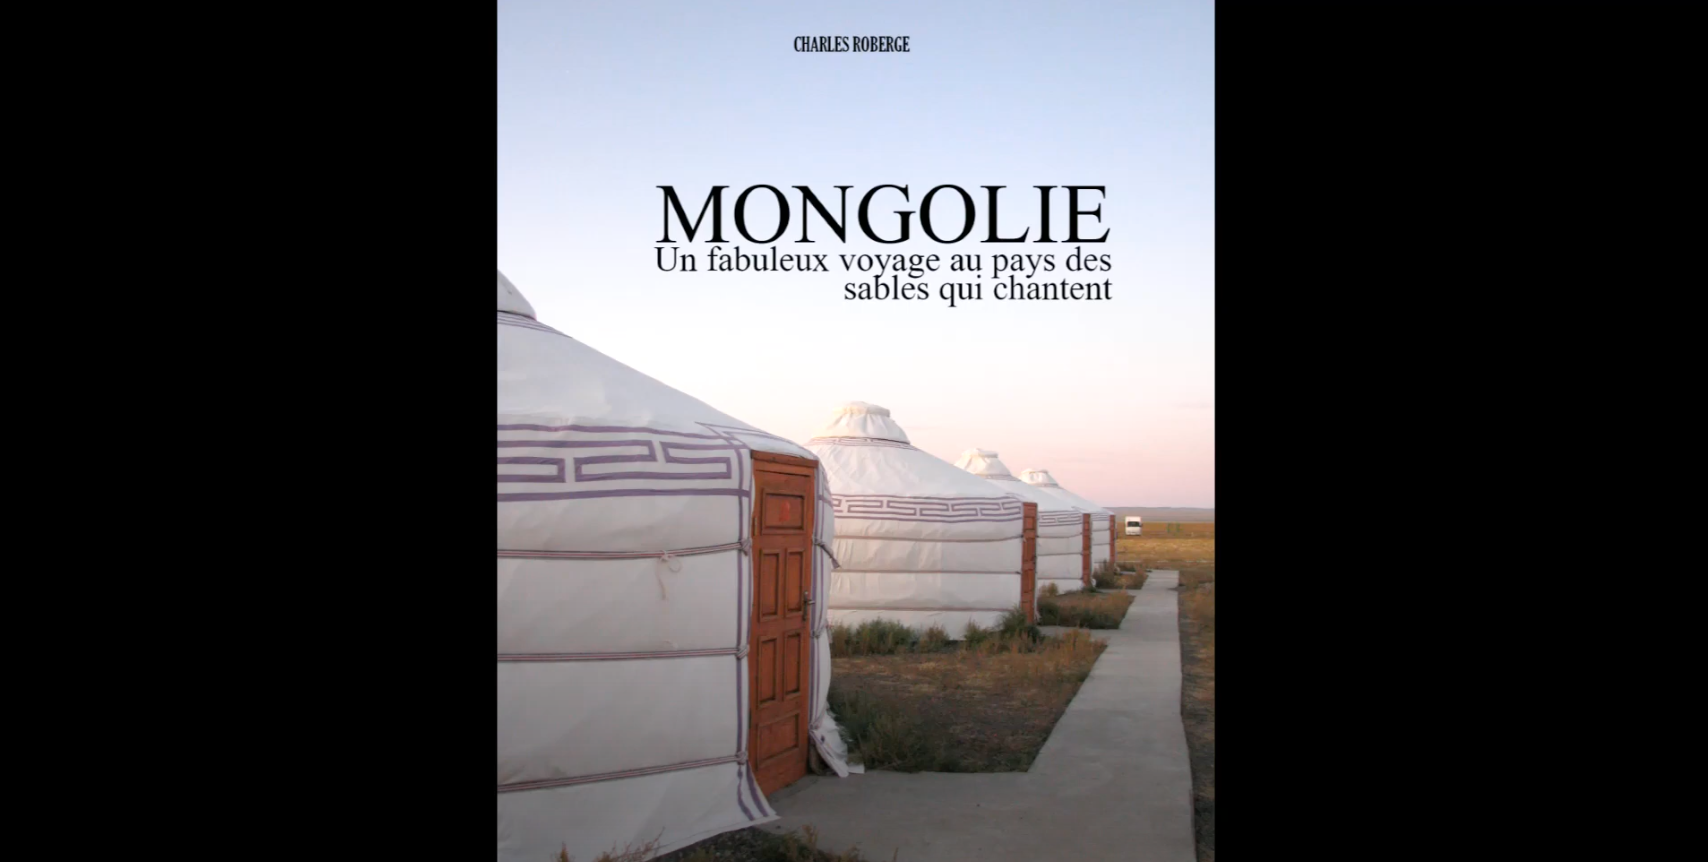 Mongolie, pays des sables qui chantent